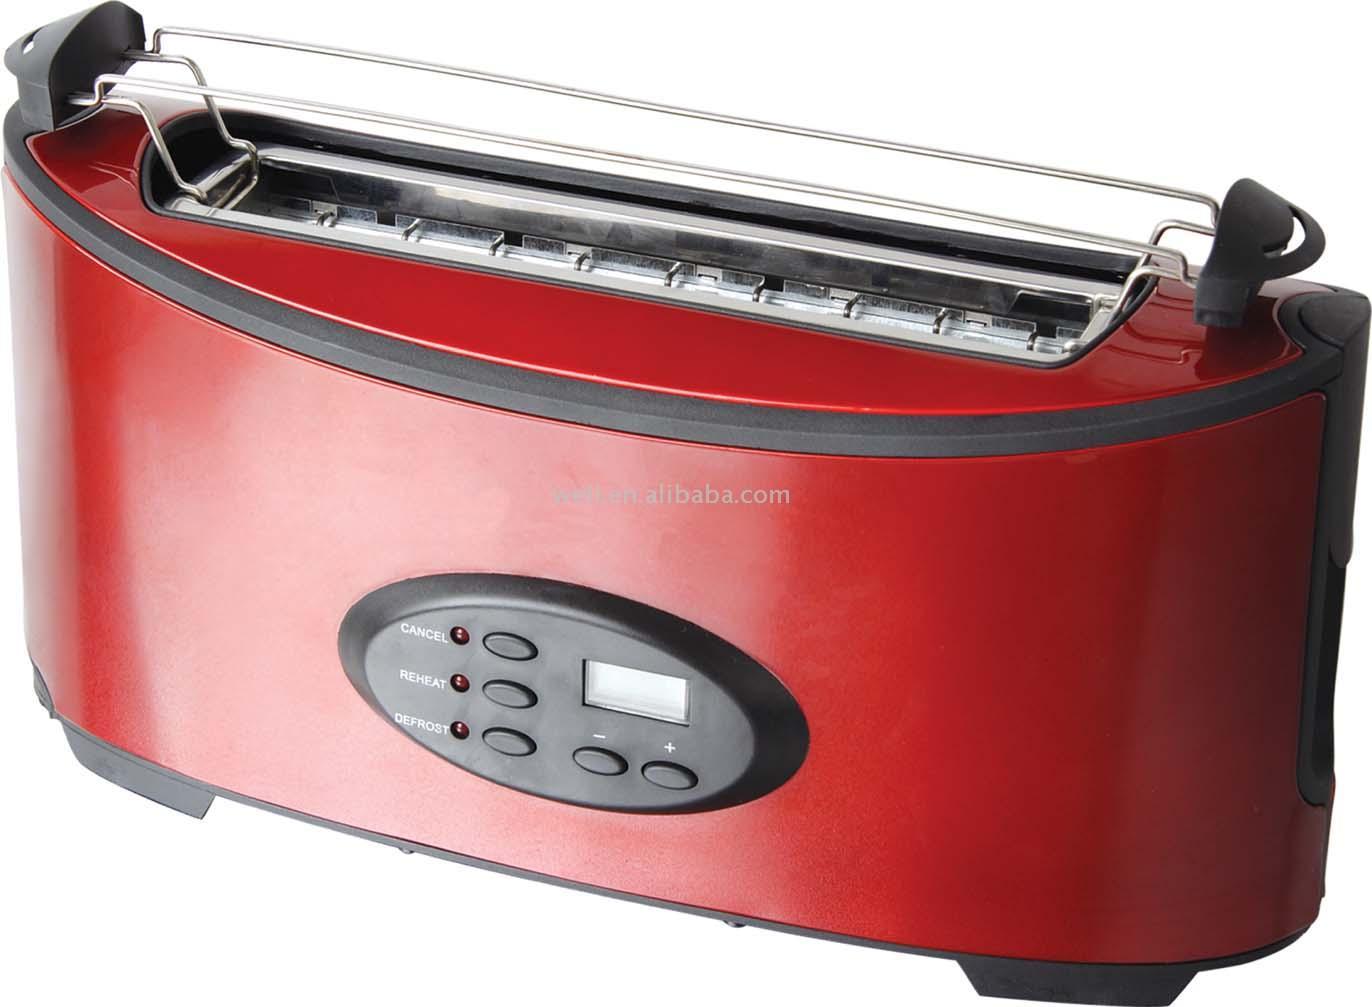  Electric S/S Pop-Up Toaster (Électrique S / S Pop-Up Grille-pain)